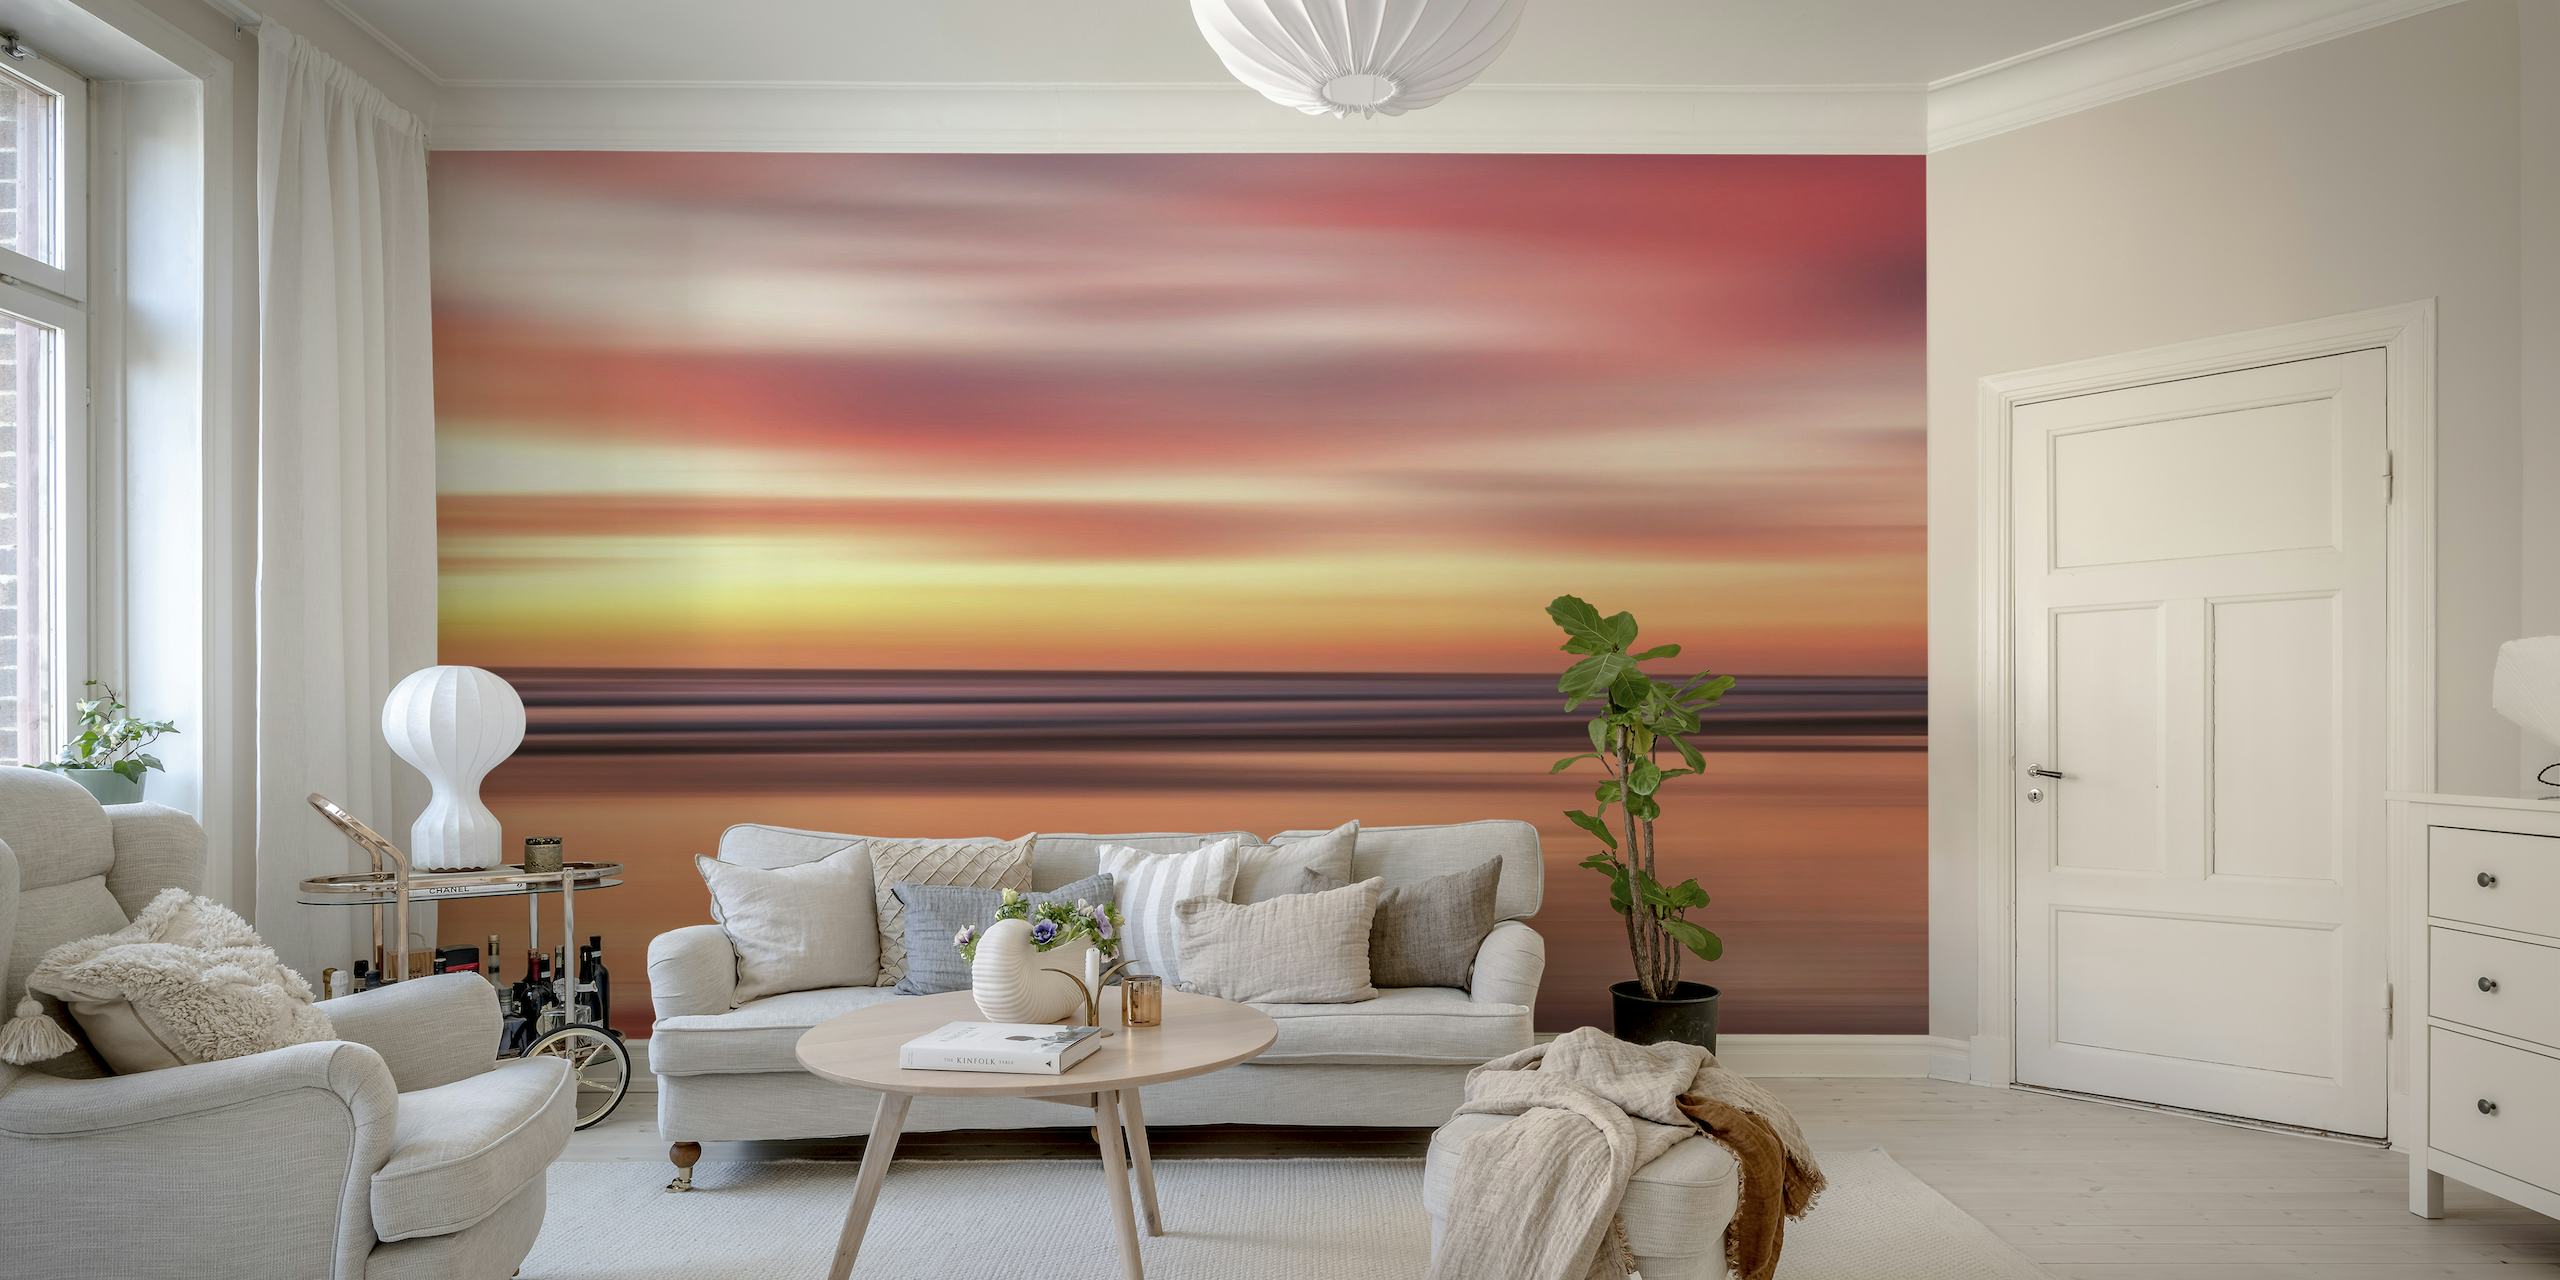 Sunset Summer 9 zidna slika sa živim ružičastim i narančastim nijansama koje se odražavaju na mirnim vodama